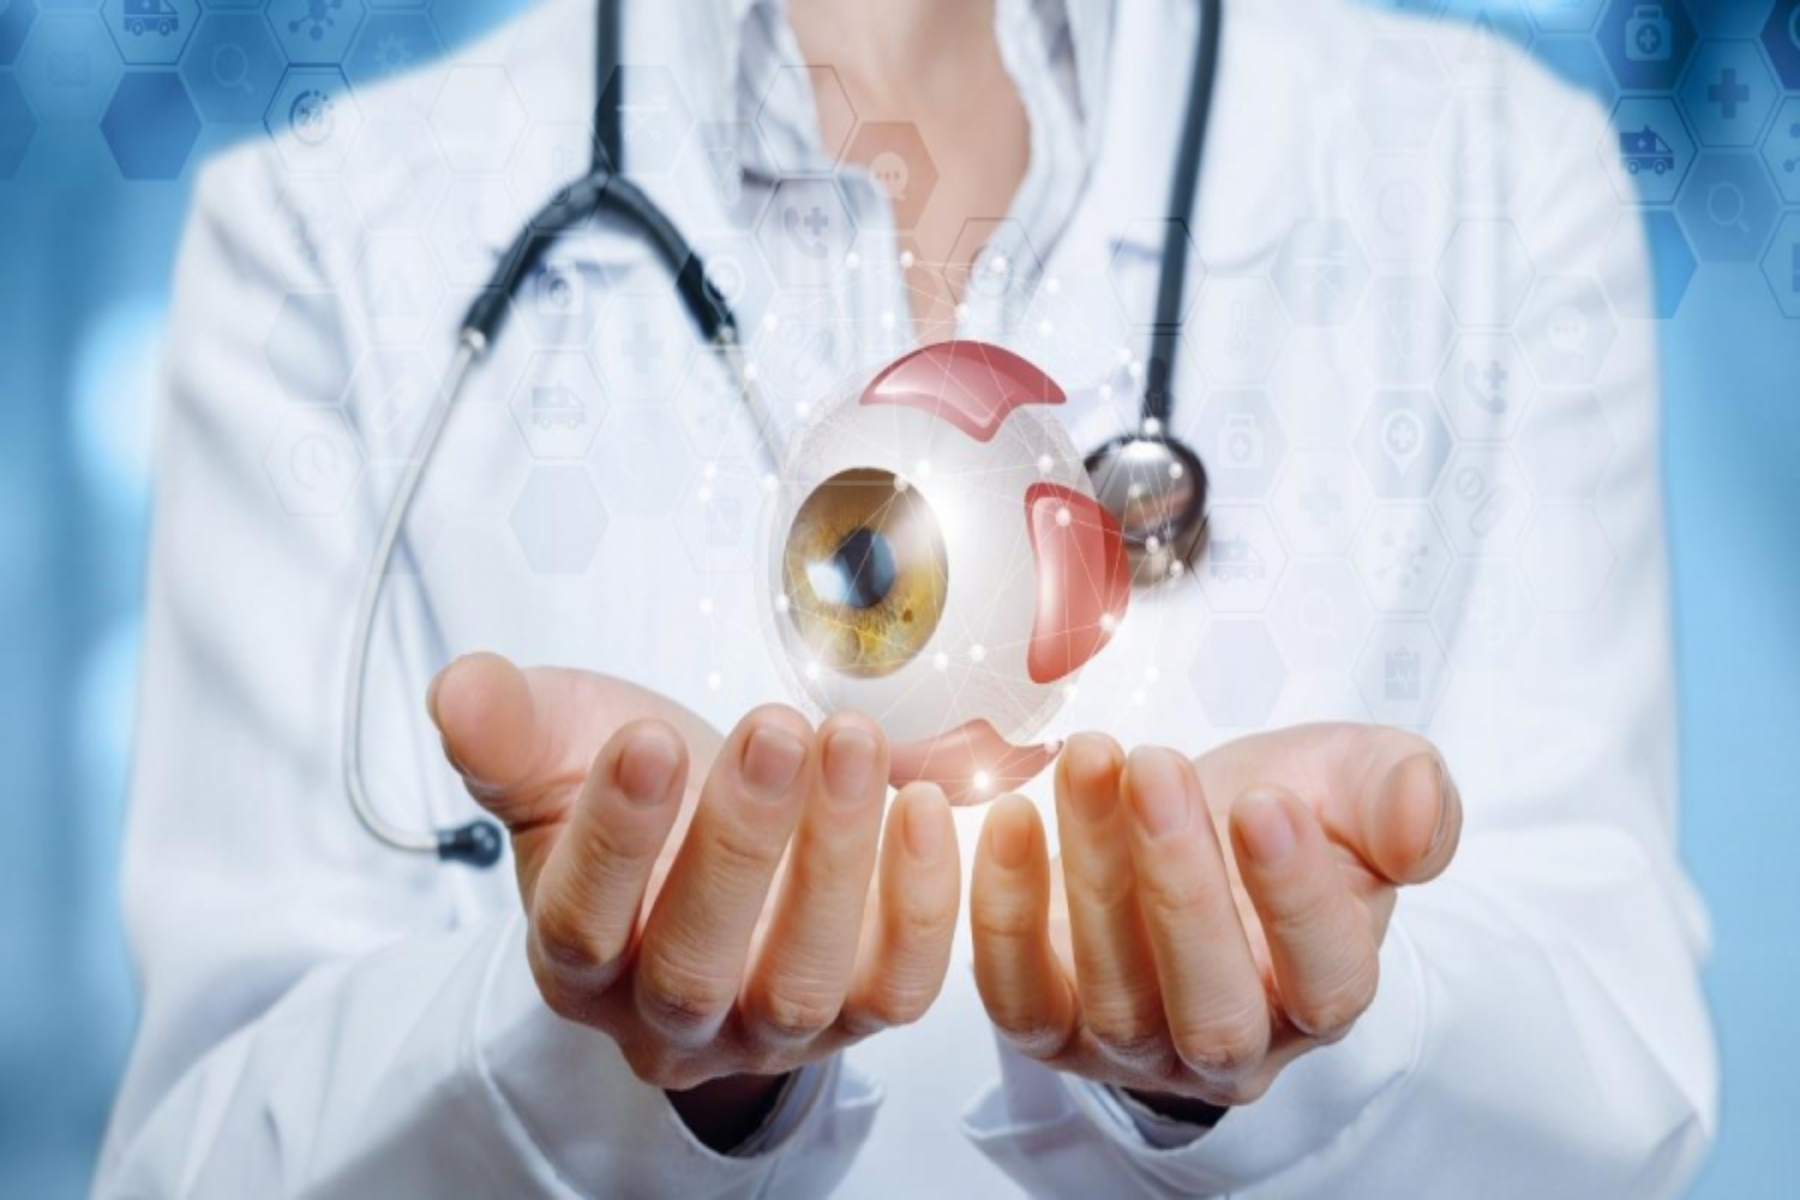 Μάτια υγεία: Απλοί τρόποι για να διατηρήσετε υγιή μάτια χωρίς χημικά